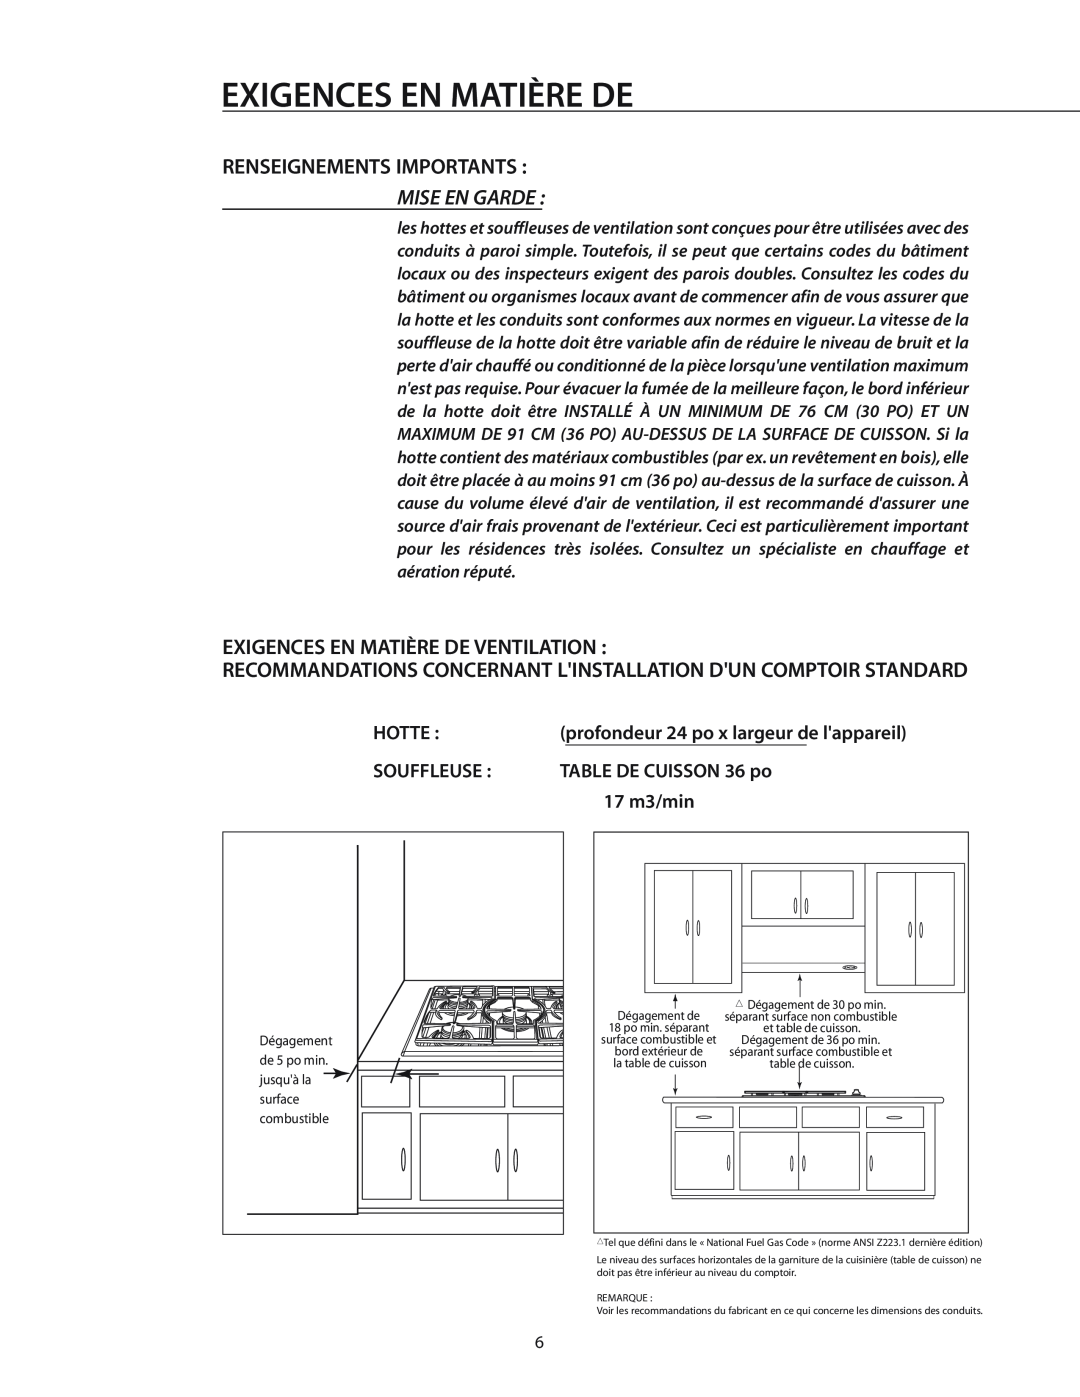 DCS T-365BK, CT-365SS installation manual Renseignements Importants, Mise En Garde, Exigences En Matière De Ventilation 